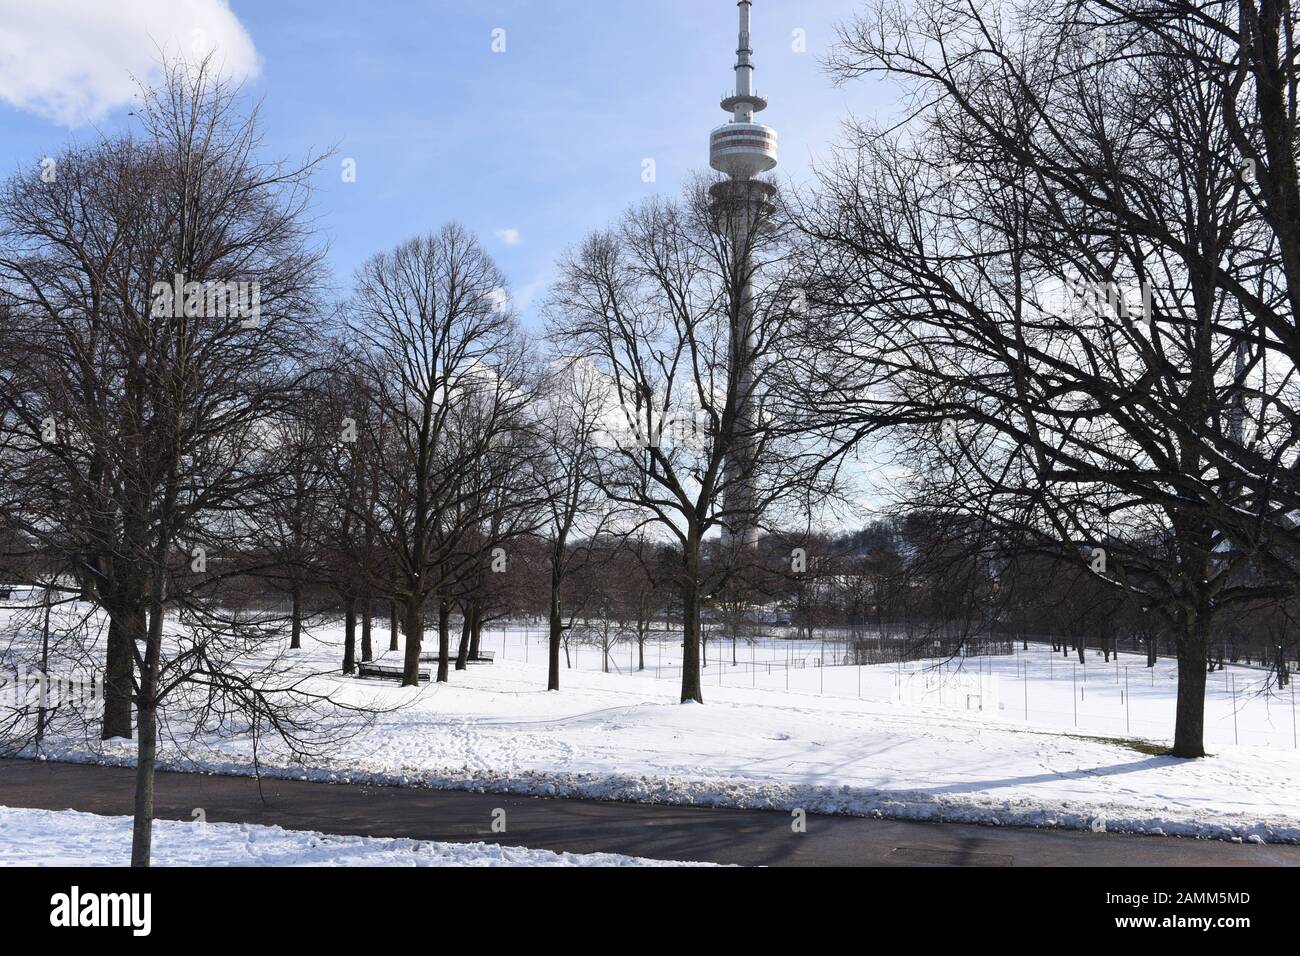 Le linden grove dans le parc olympique de Munich. Le mémorial aux victimes de la tentative d'assassinat aux Jeux olympiques de 1972 doit être construit ici. En arrière-plan la tour olympique. [traduction automatique] Banque D'Images